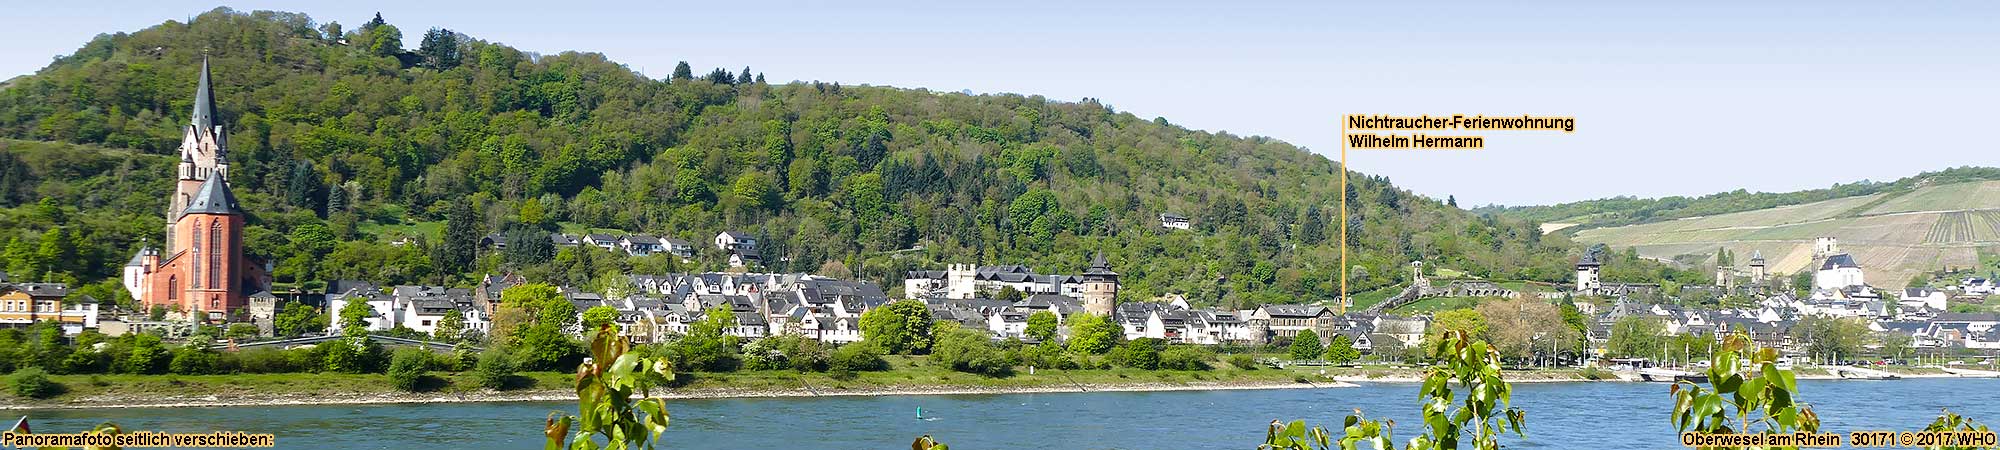 Oberwesel am Rhein, Blick von der rechten Rheinseite (links die Liebfrauenkirche).